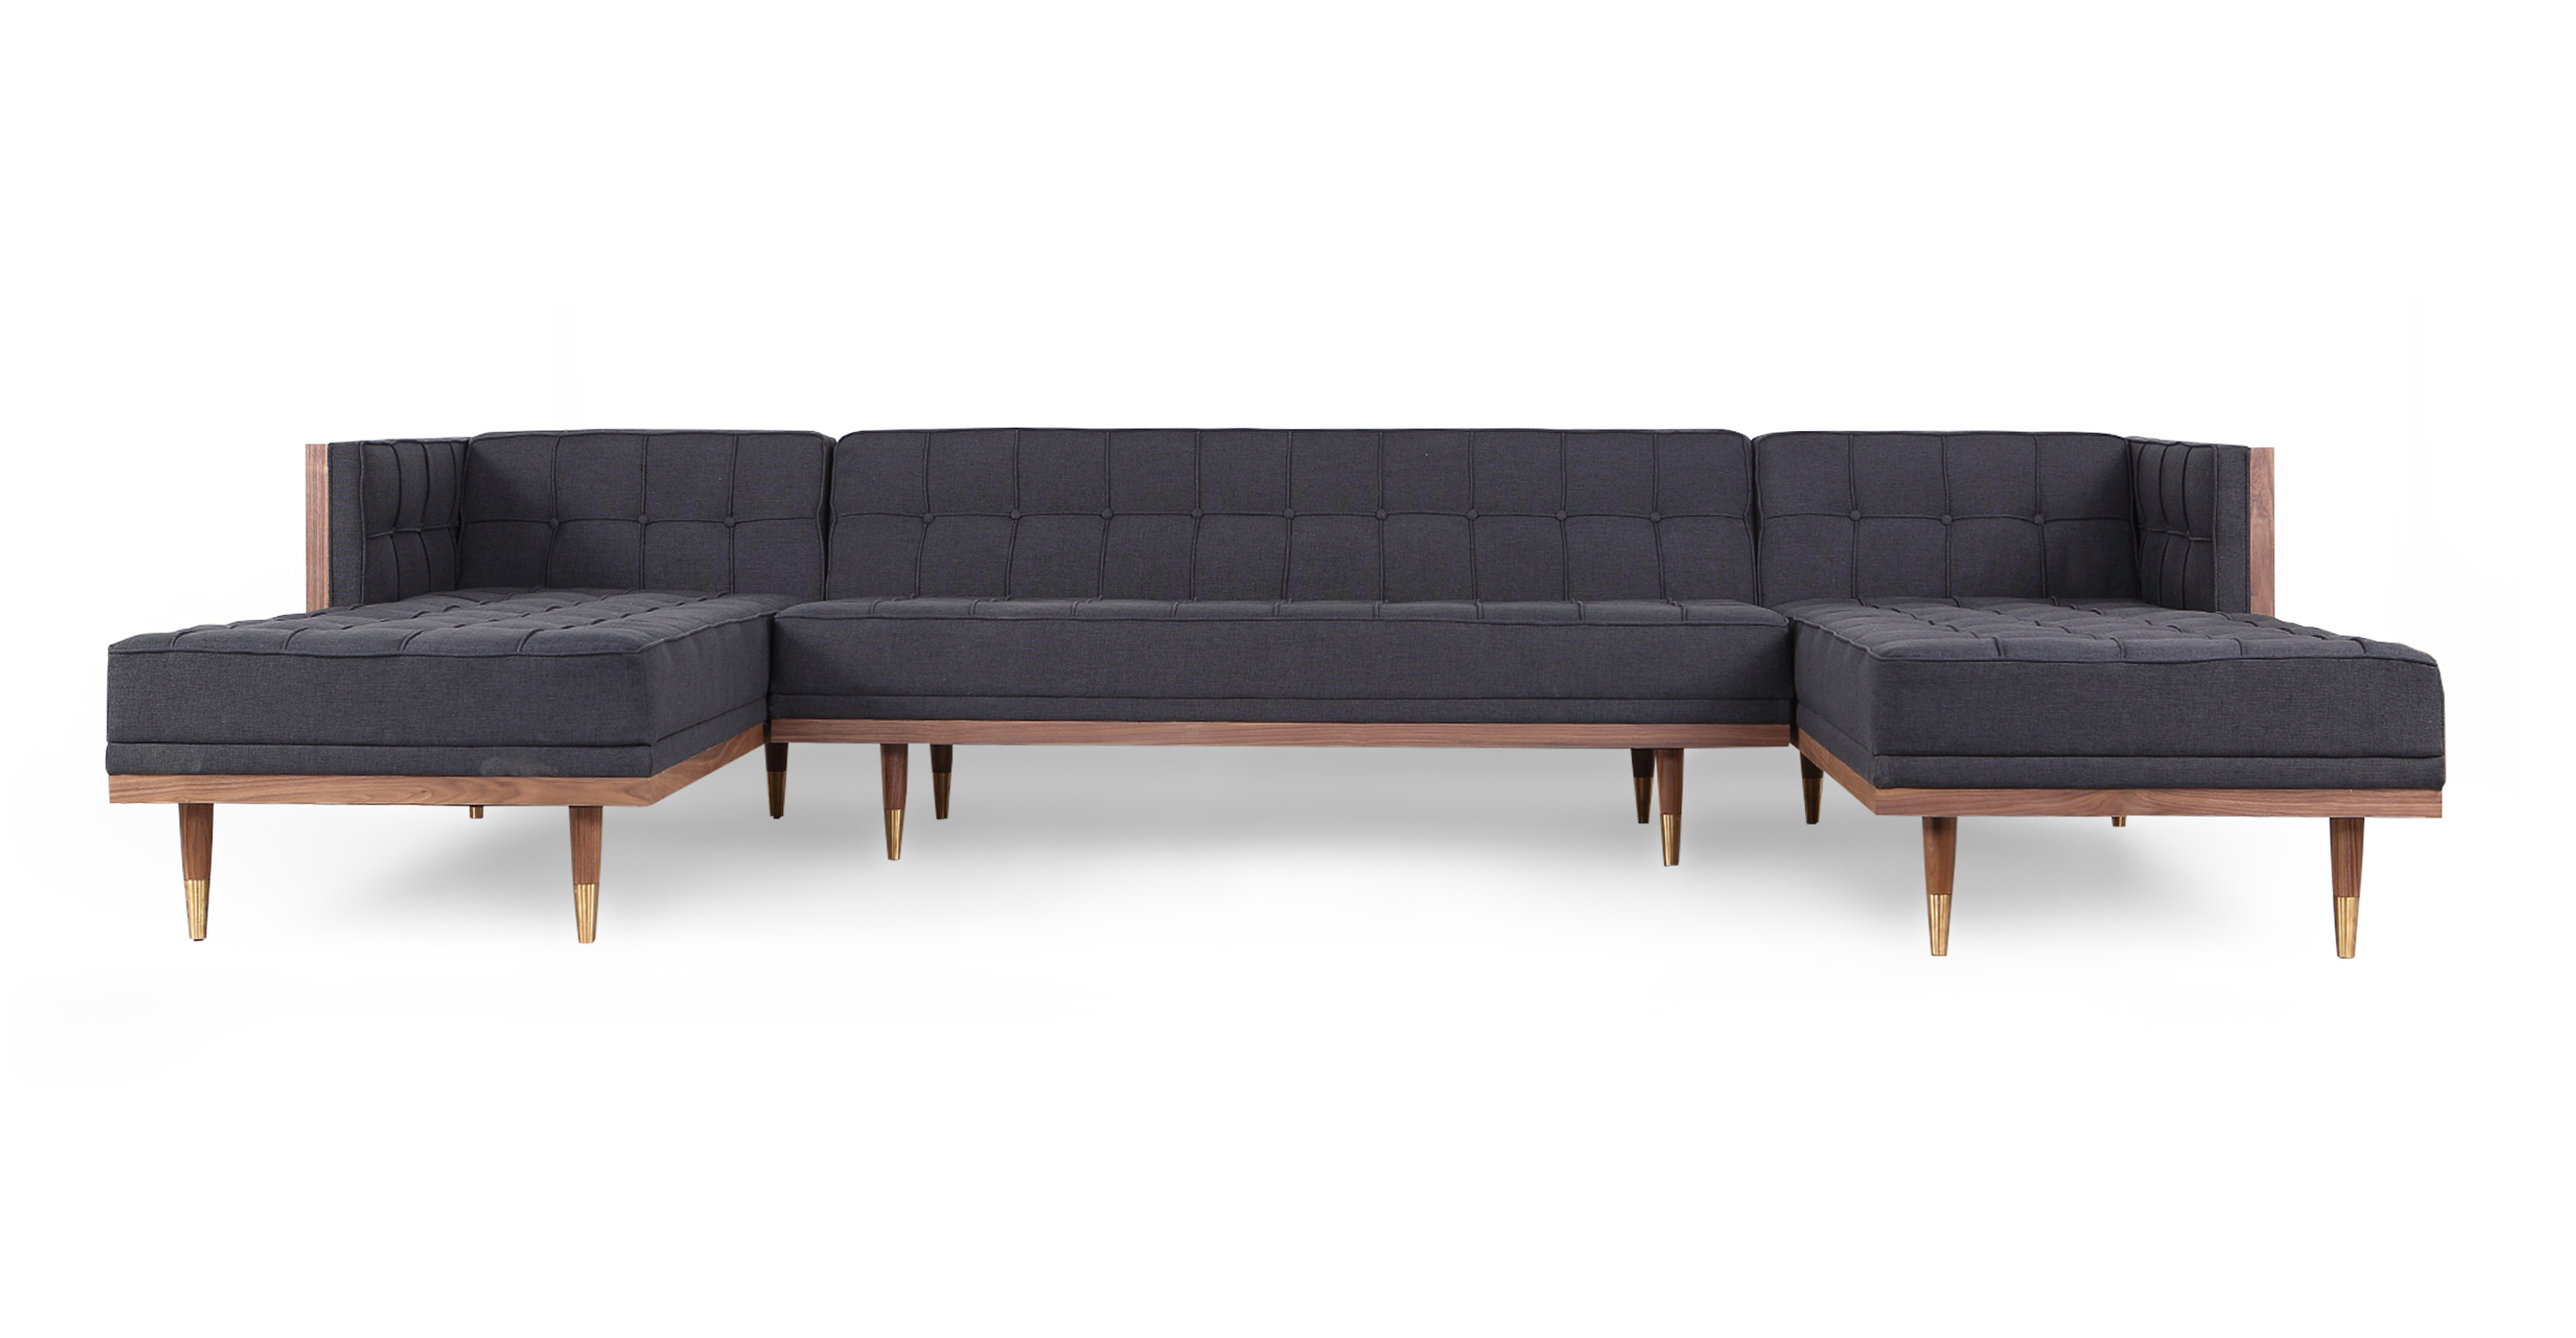 Woodrow Box 100 Leather Sofa Sectional Left, Walnut/White Aniline - Kardiel